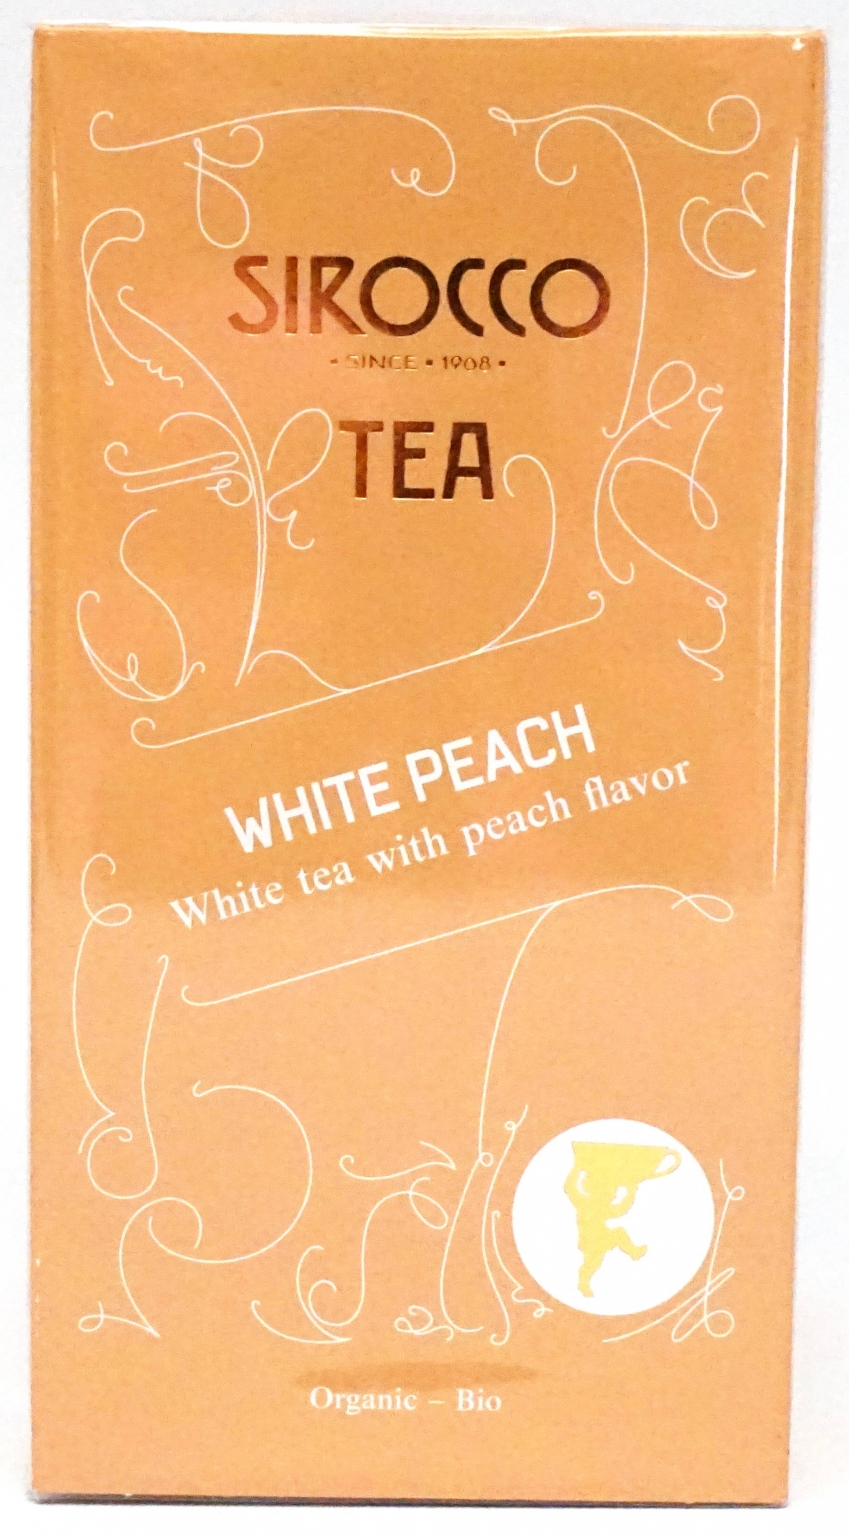 White Peach, Bio White tea with peach flavor